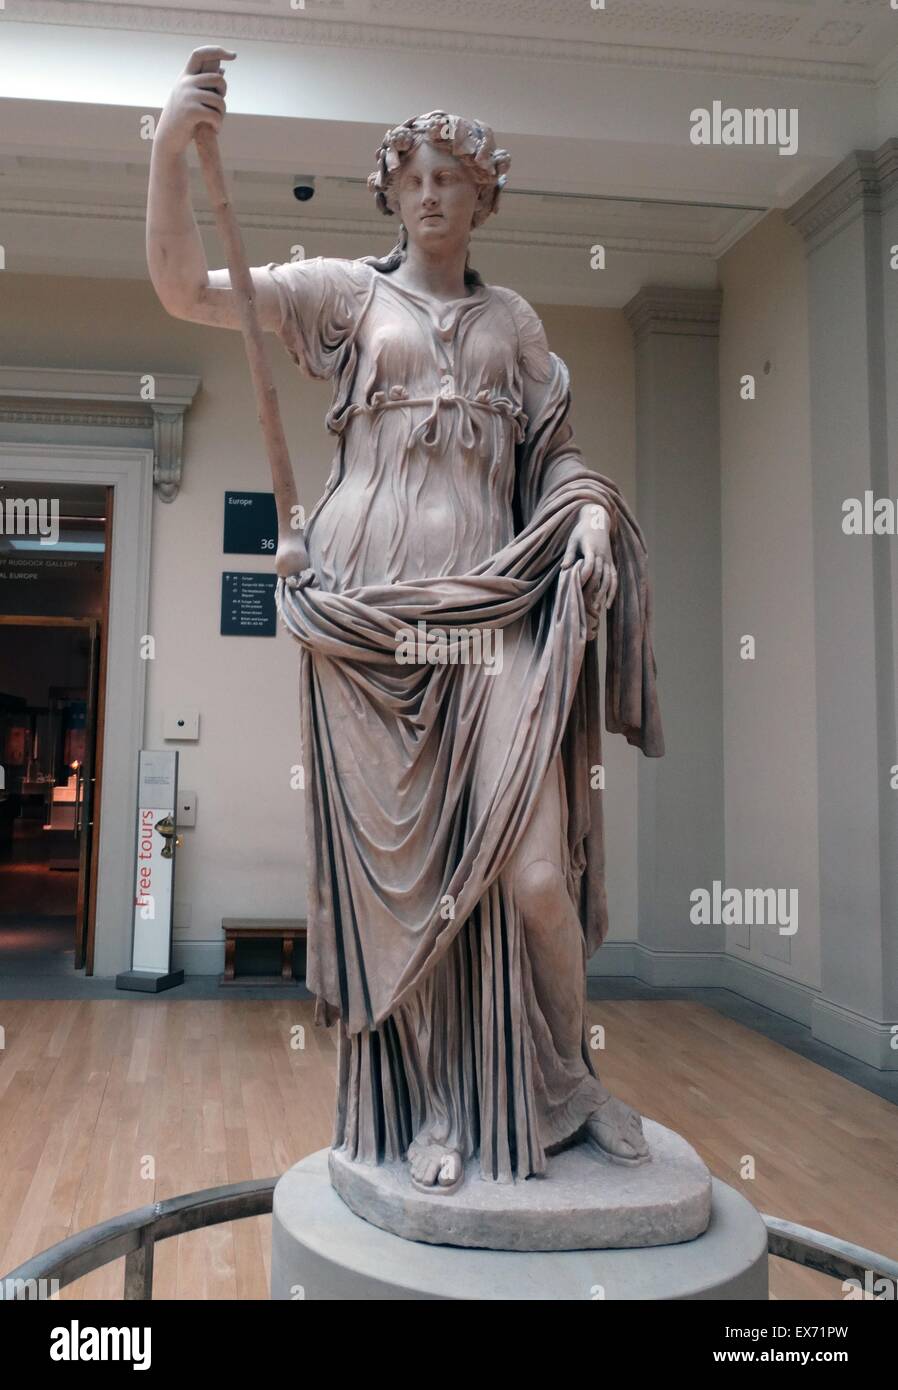 Thalia, muse de la Comédie romaine, 2ème ANNONCE de siècle statue. ln la mythologie antique, Thalia était l'une des neuf Muses. Les Muses étaient des compagnes du dieu Apollon et consacré aux arts et sciences. Banque D'Images